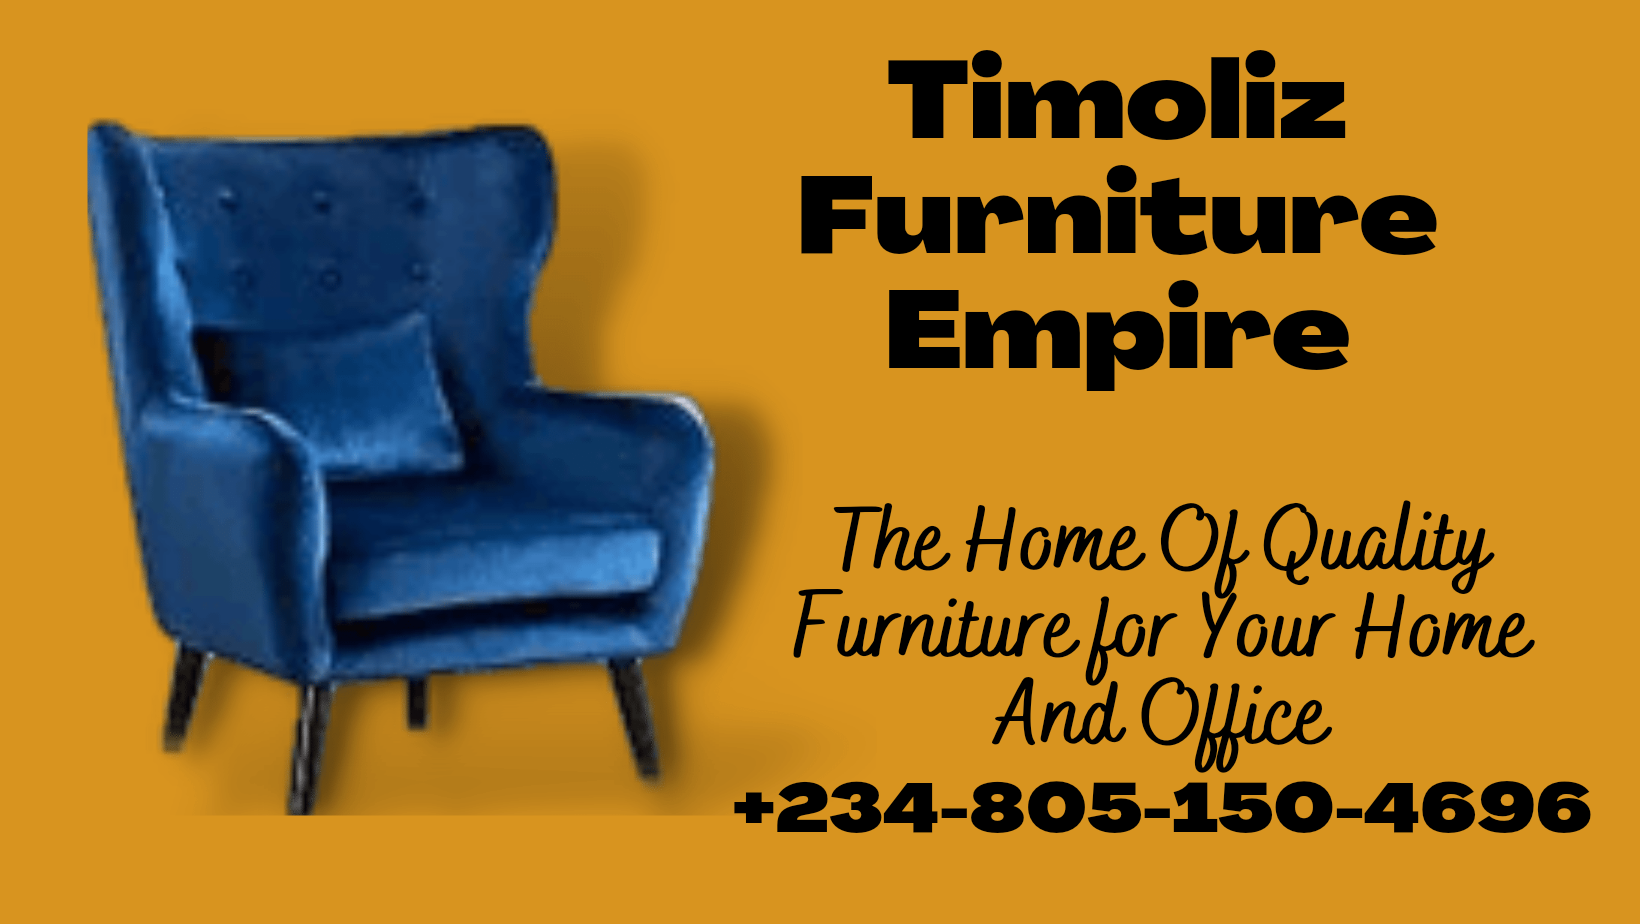 Timoliz Furniture Empire